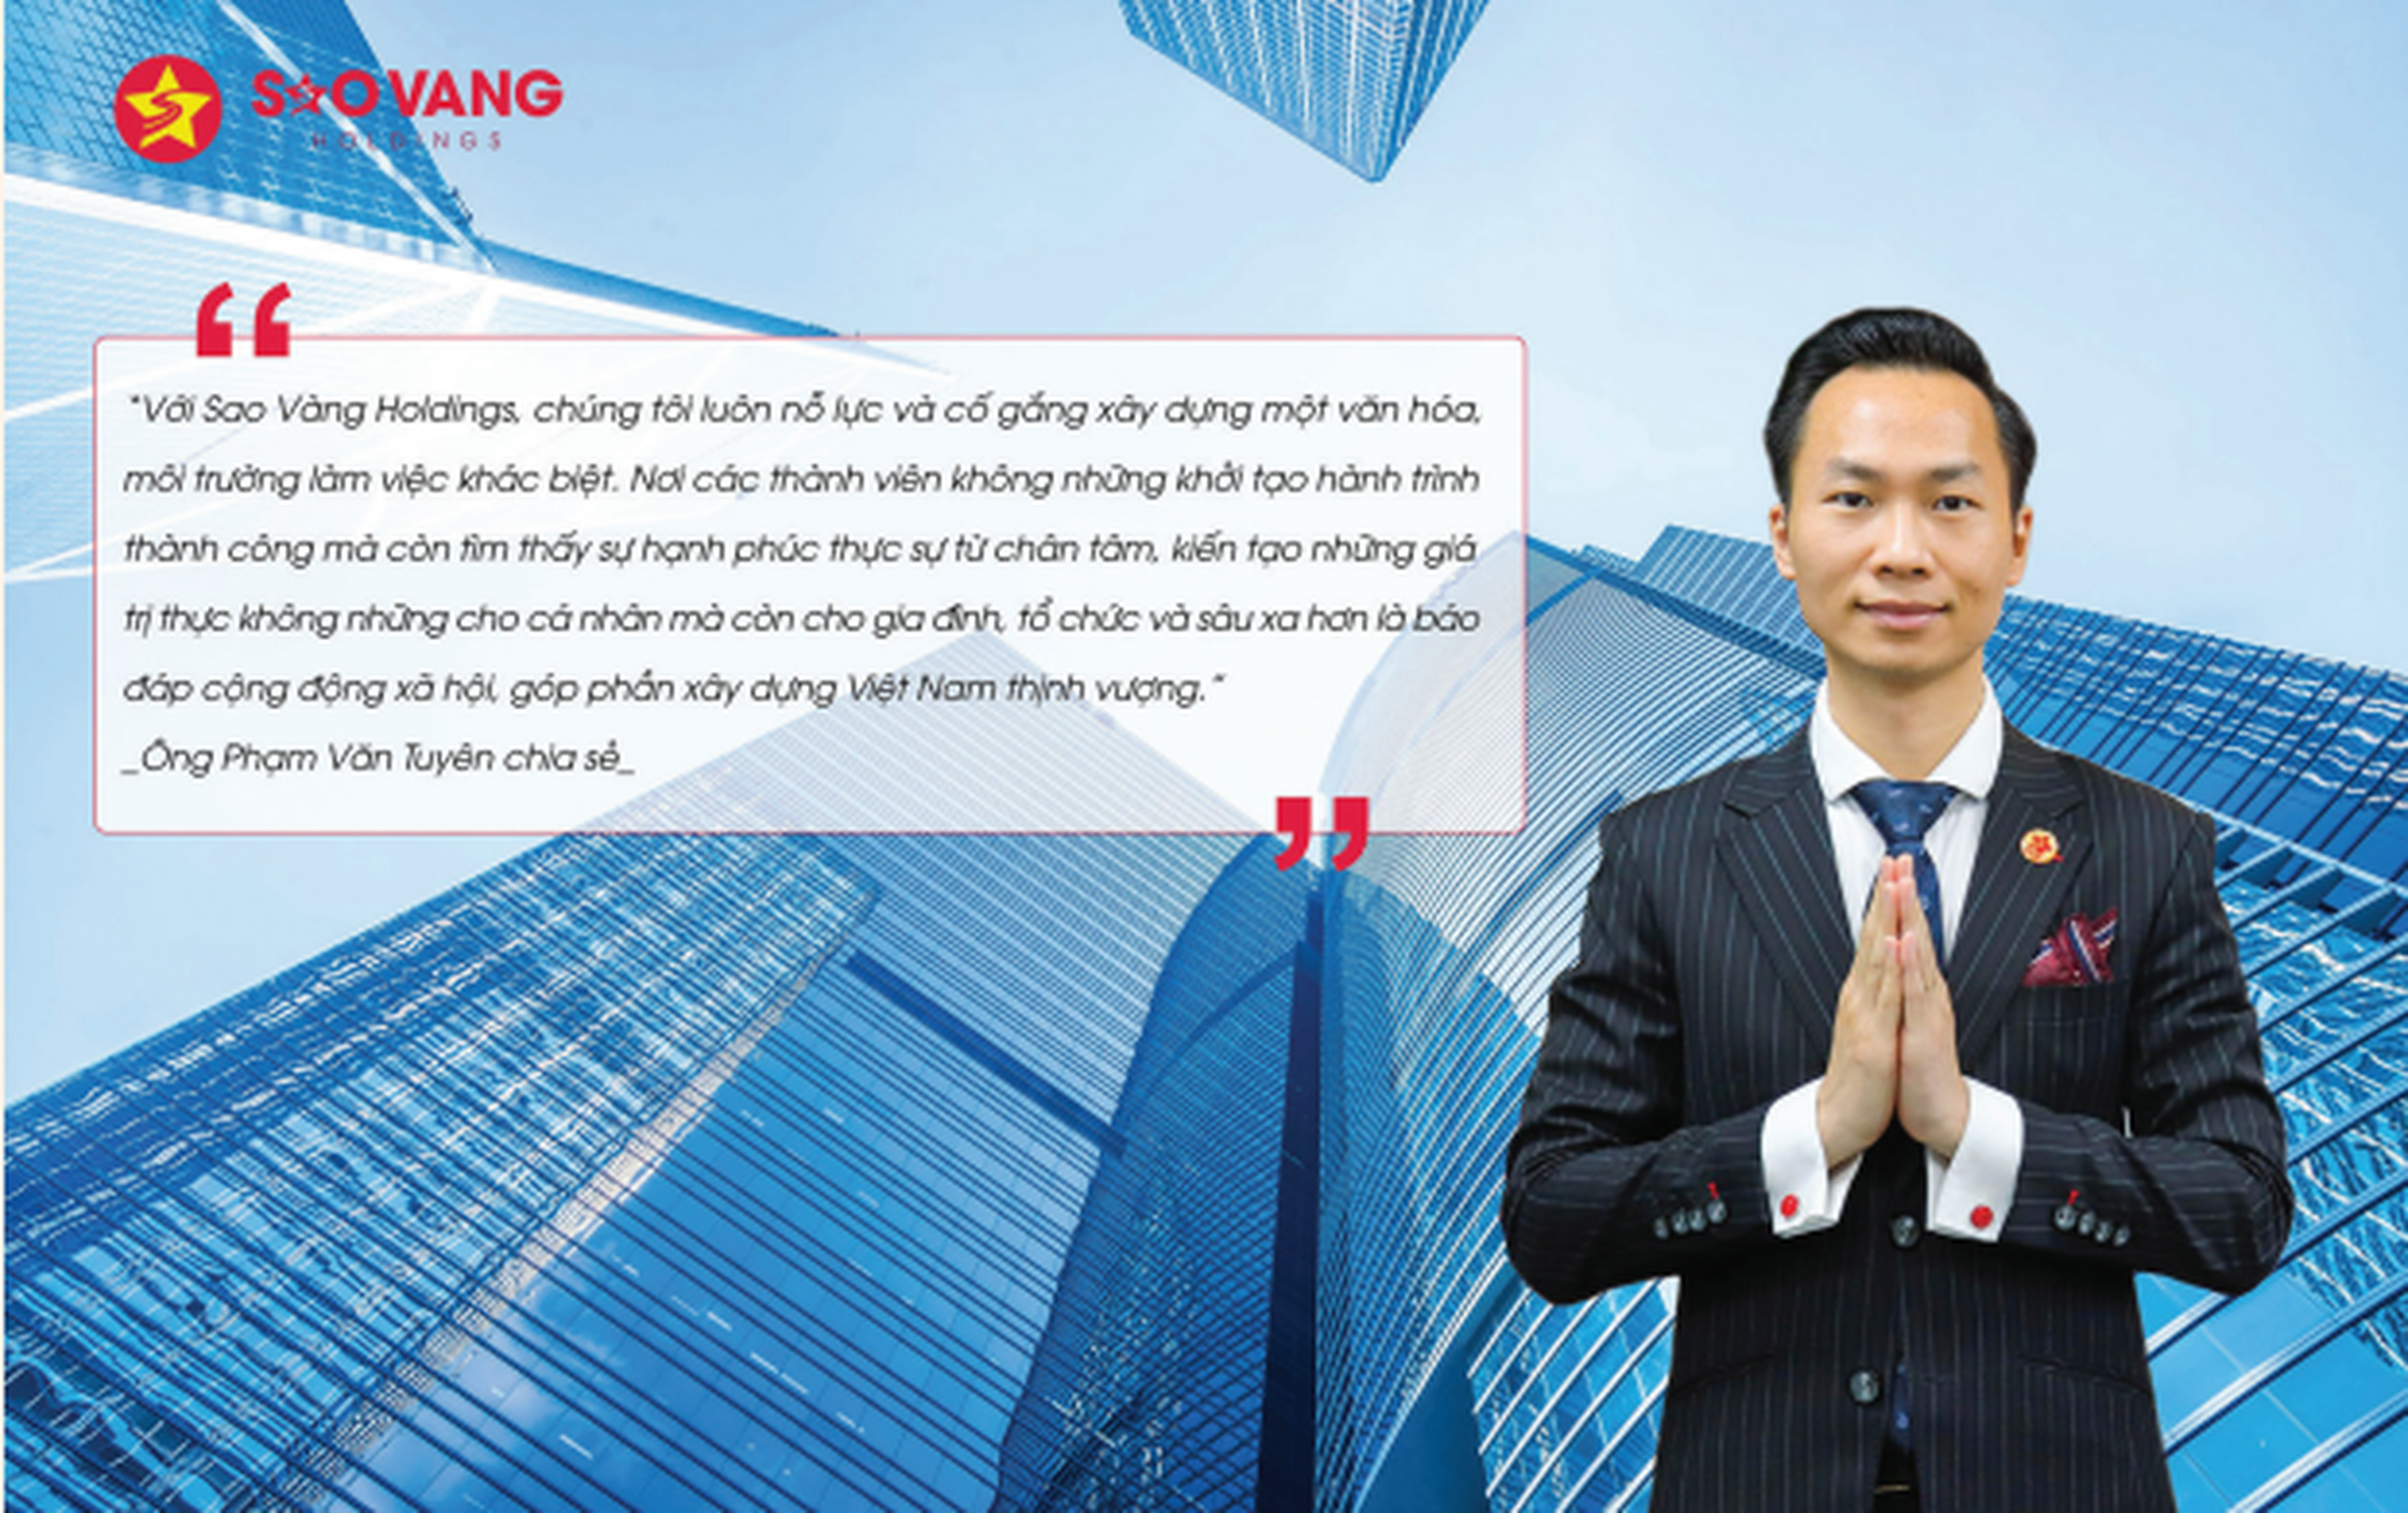 Sao Vàng Holdings - Văn hóa giúp chúng tôi khác biệt trên thị trường Bất động sản-4